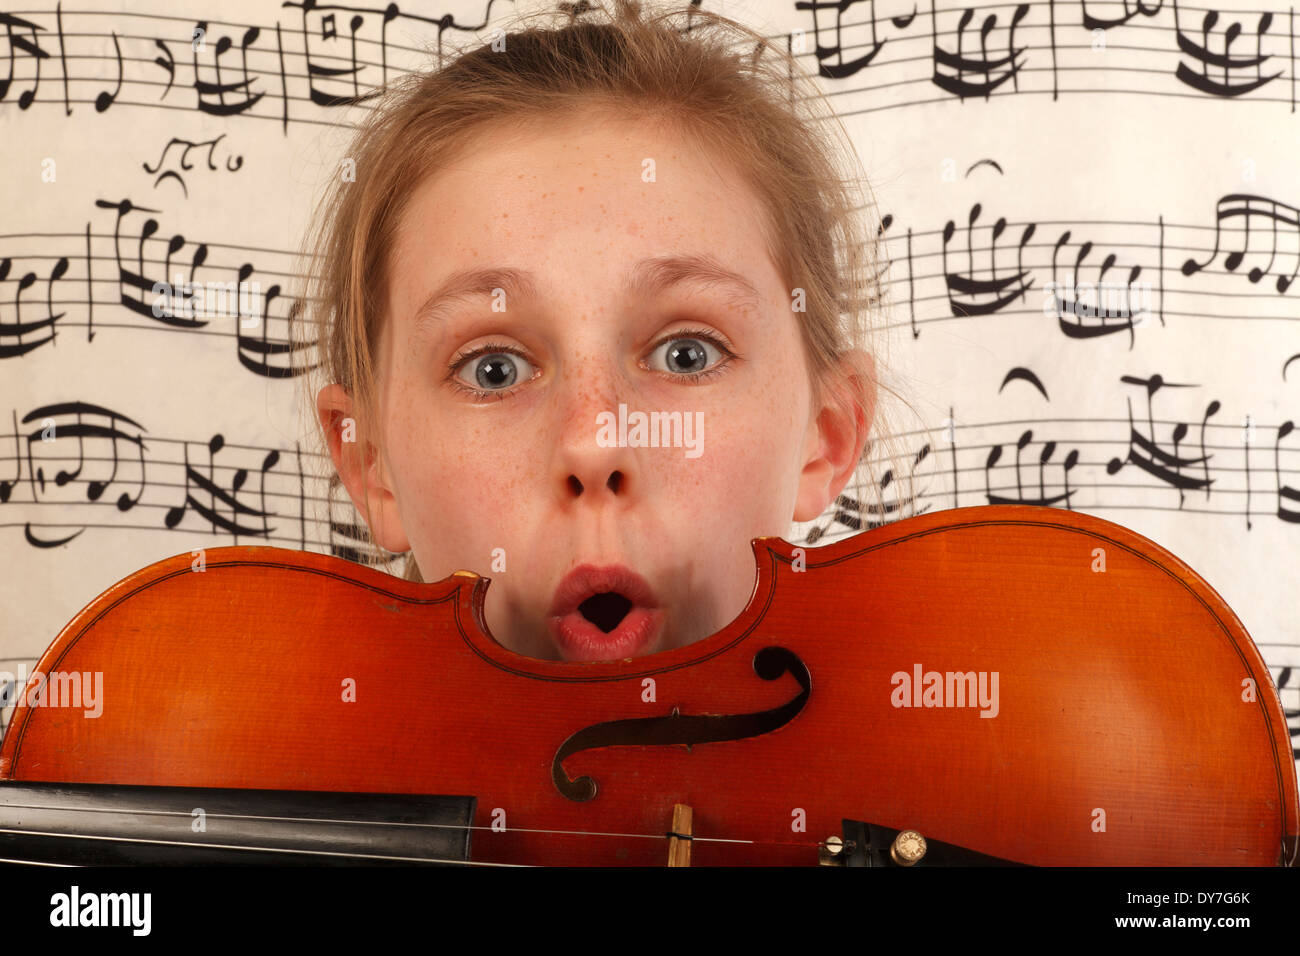 La joie de la musique pour les enfants les enfants Banque D'Images